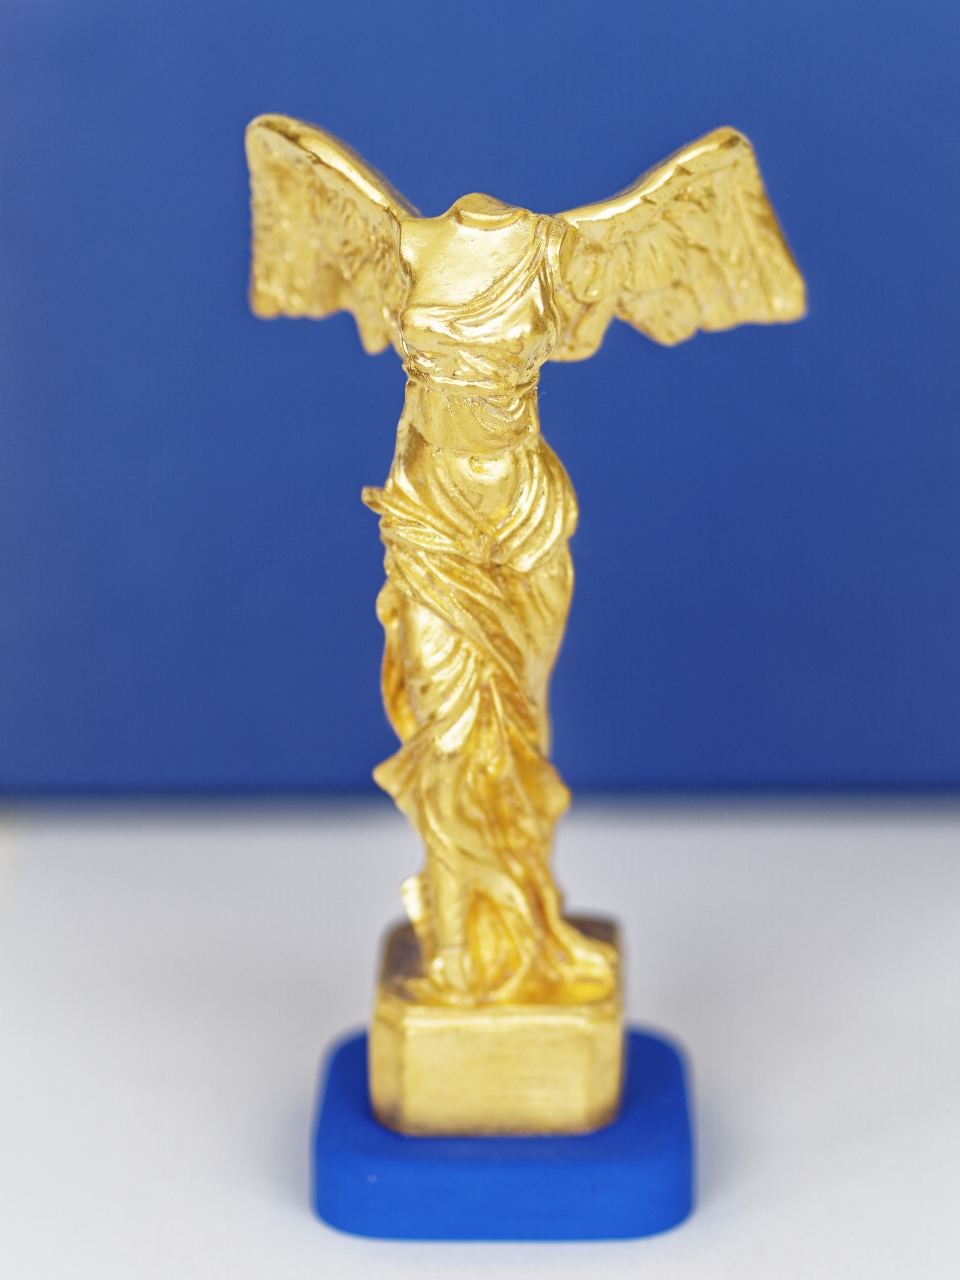 Victoire dorée, Golden victory , 15 cm